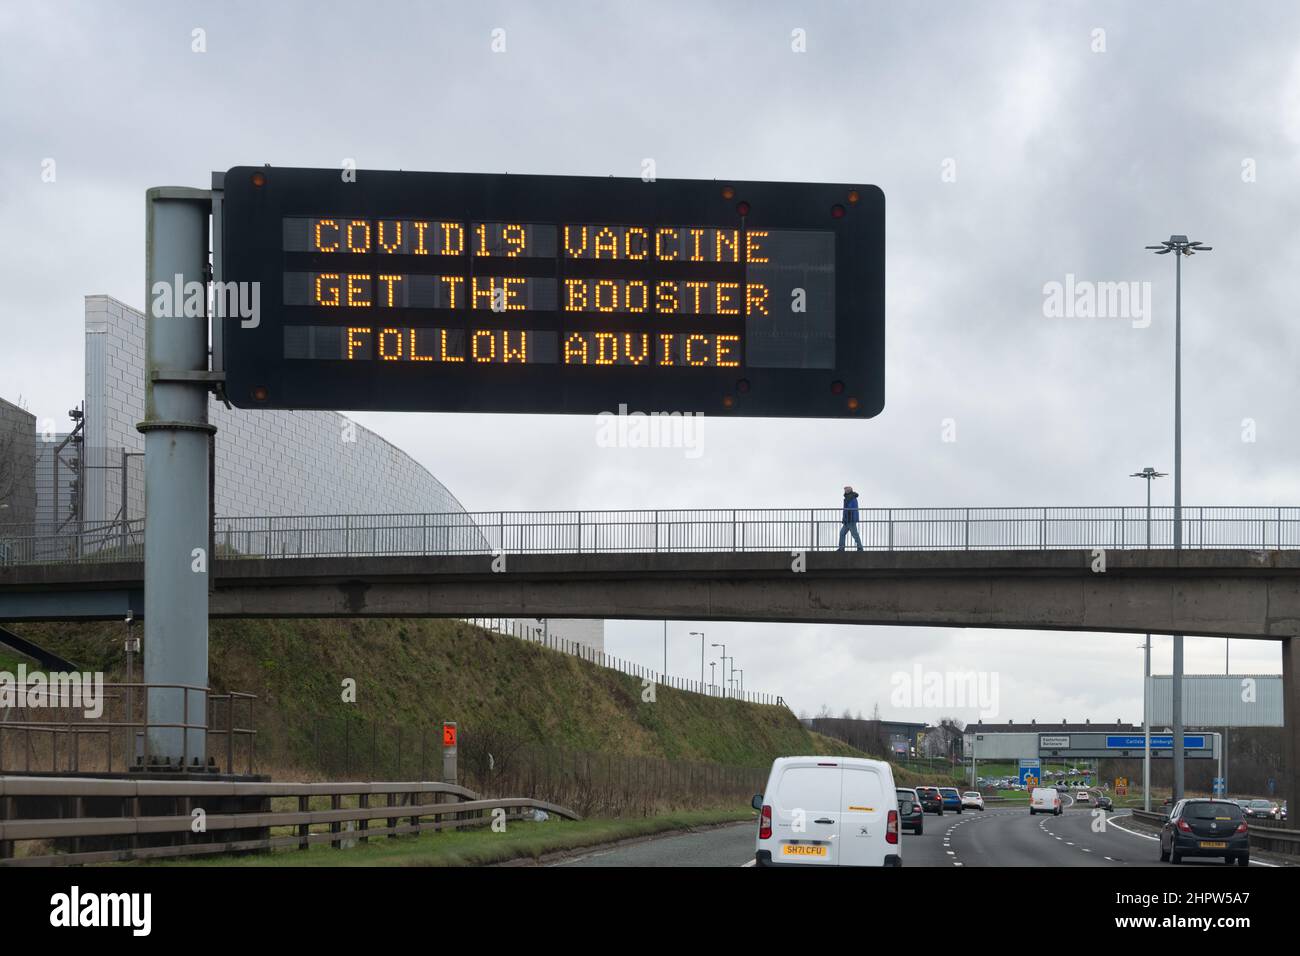 Vacuna de refuerzo Covid - covid19 Vacuna obtener el refuerzo siga consejos señal gigante de la autopista, Glasgow Escocia, Reino Unido Foto de stock